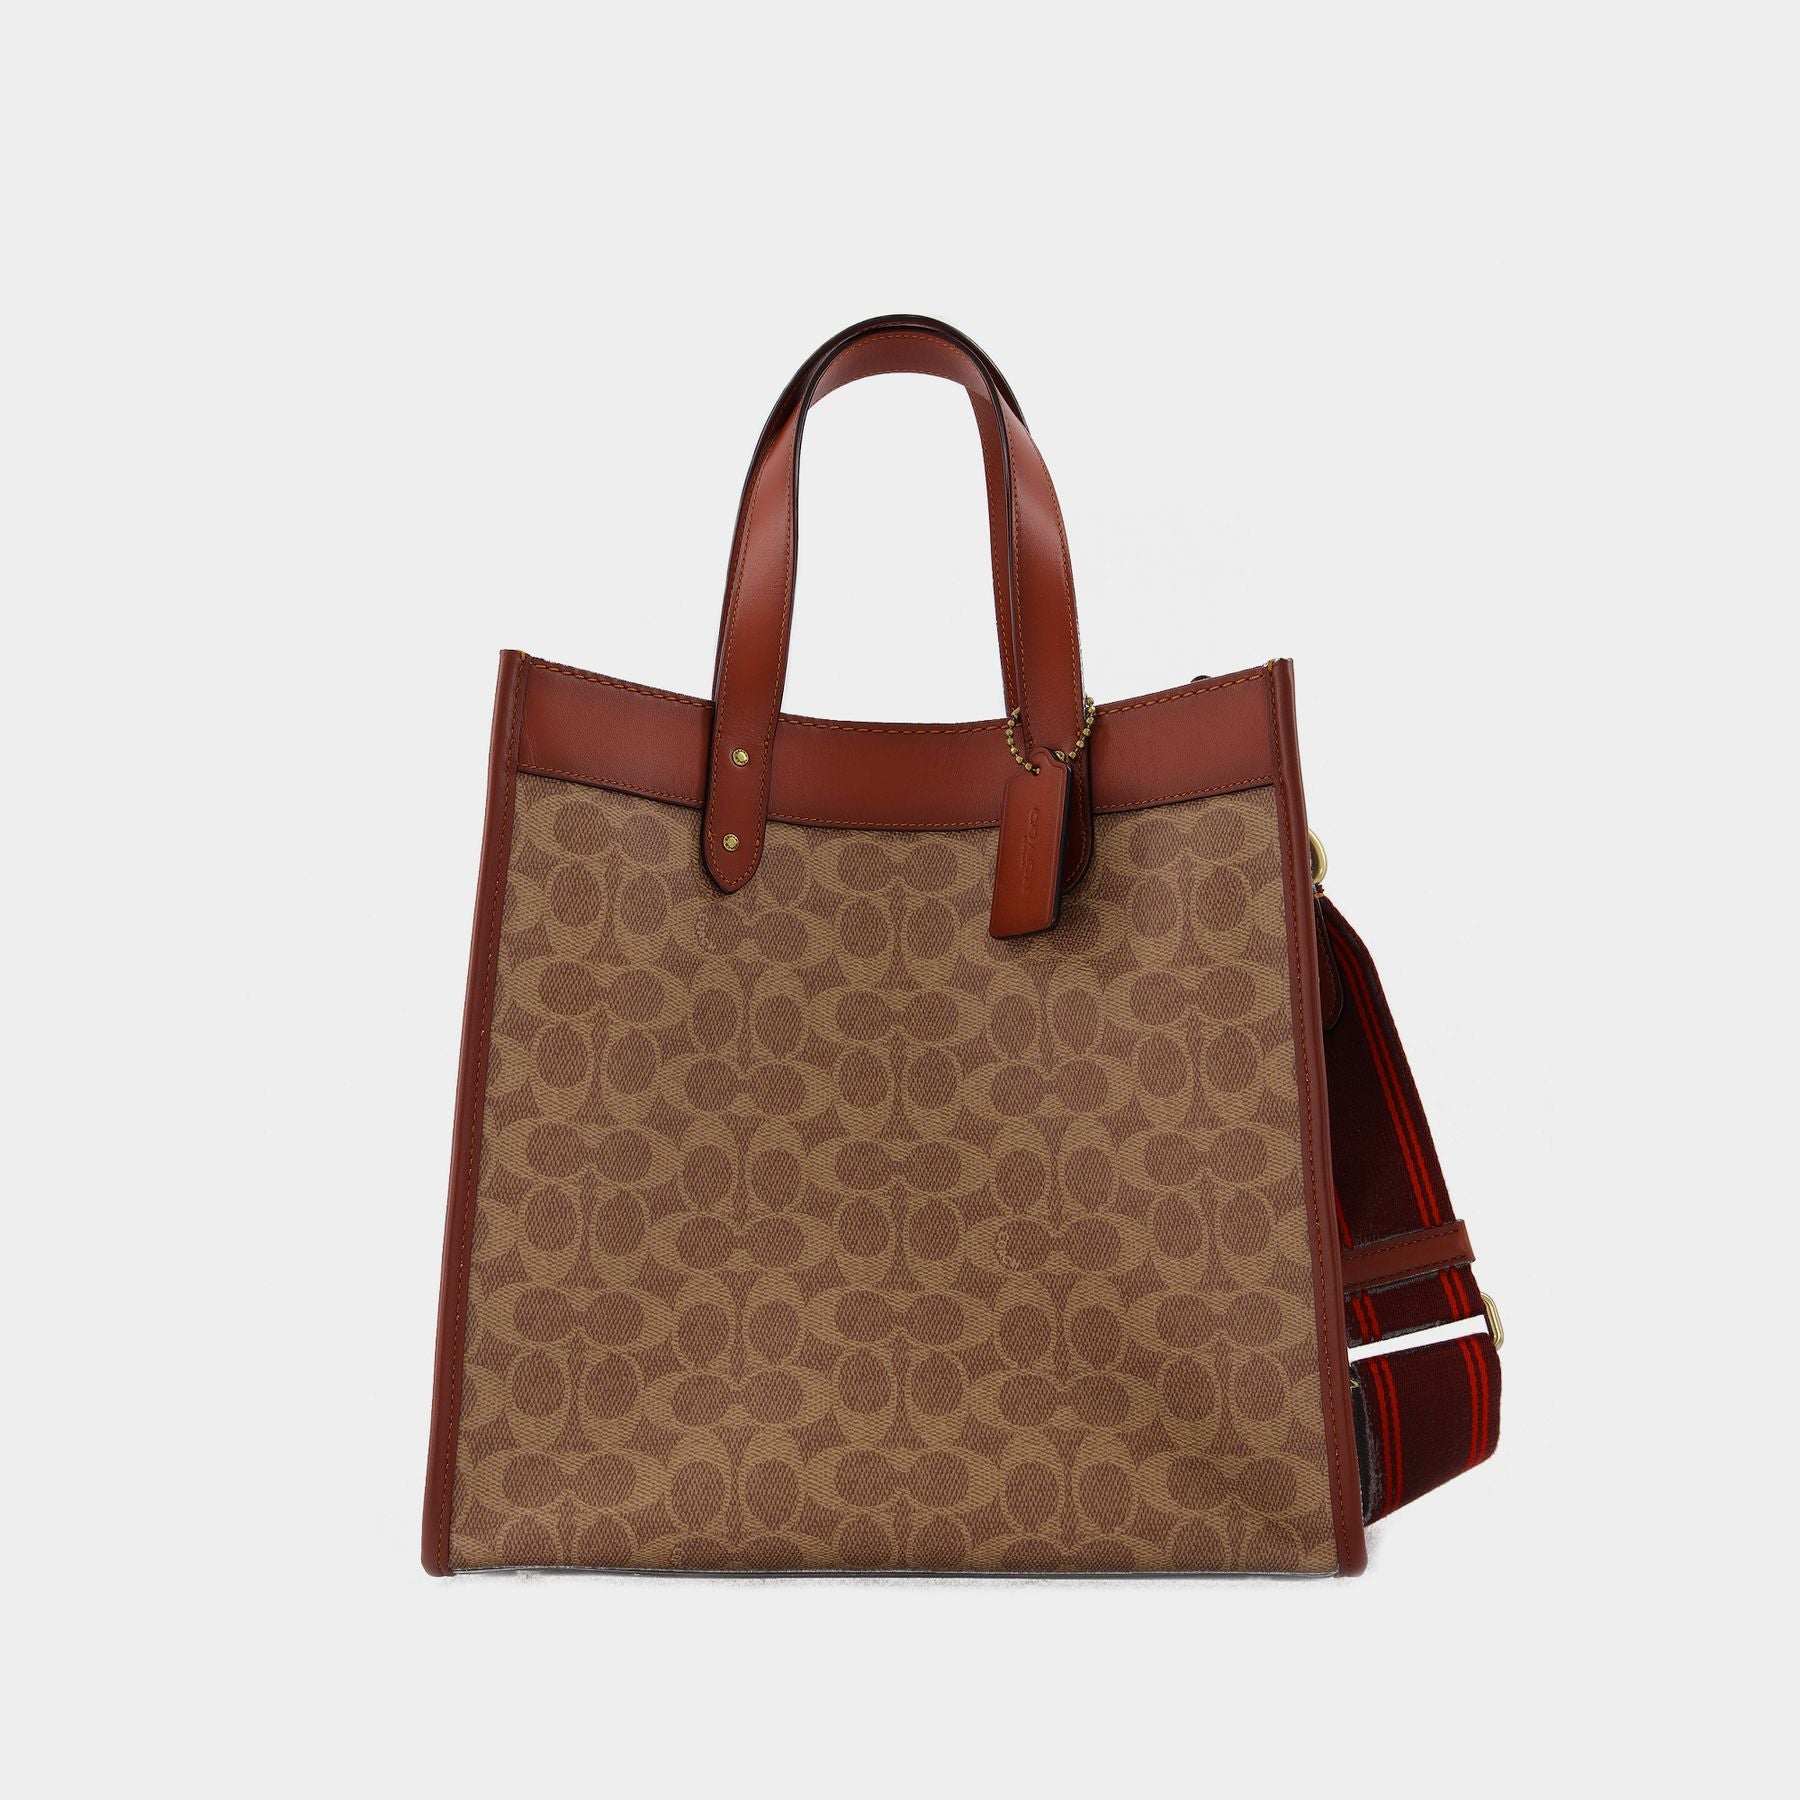 Louis Vuitton fabric, Coach fabric, Gucci fabric, Louis Vuitton